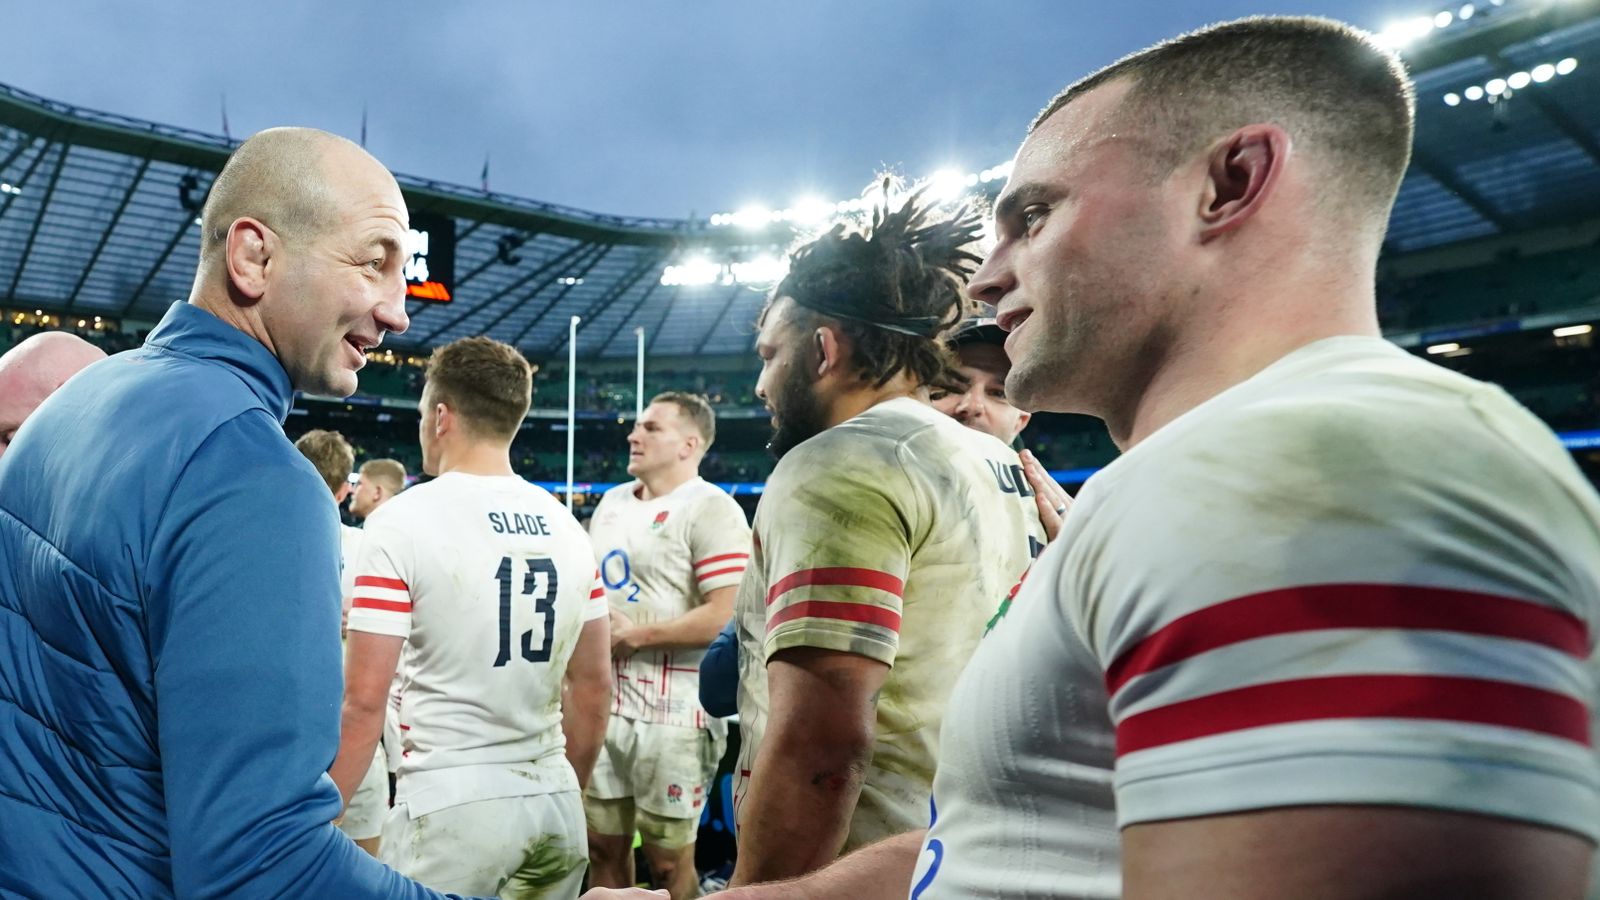 Steve Borthwick: l’entraîneur-chef de l’Angleterre tient à comprendre l’habitude de s’estomper tard dans les matchs des Six Nations |  Actualités du rugby à XV